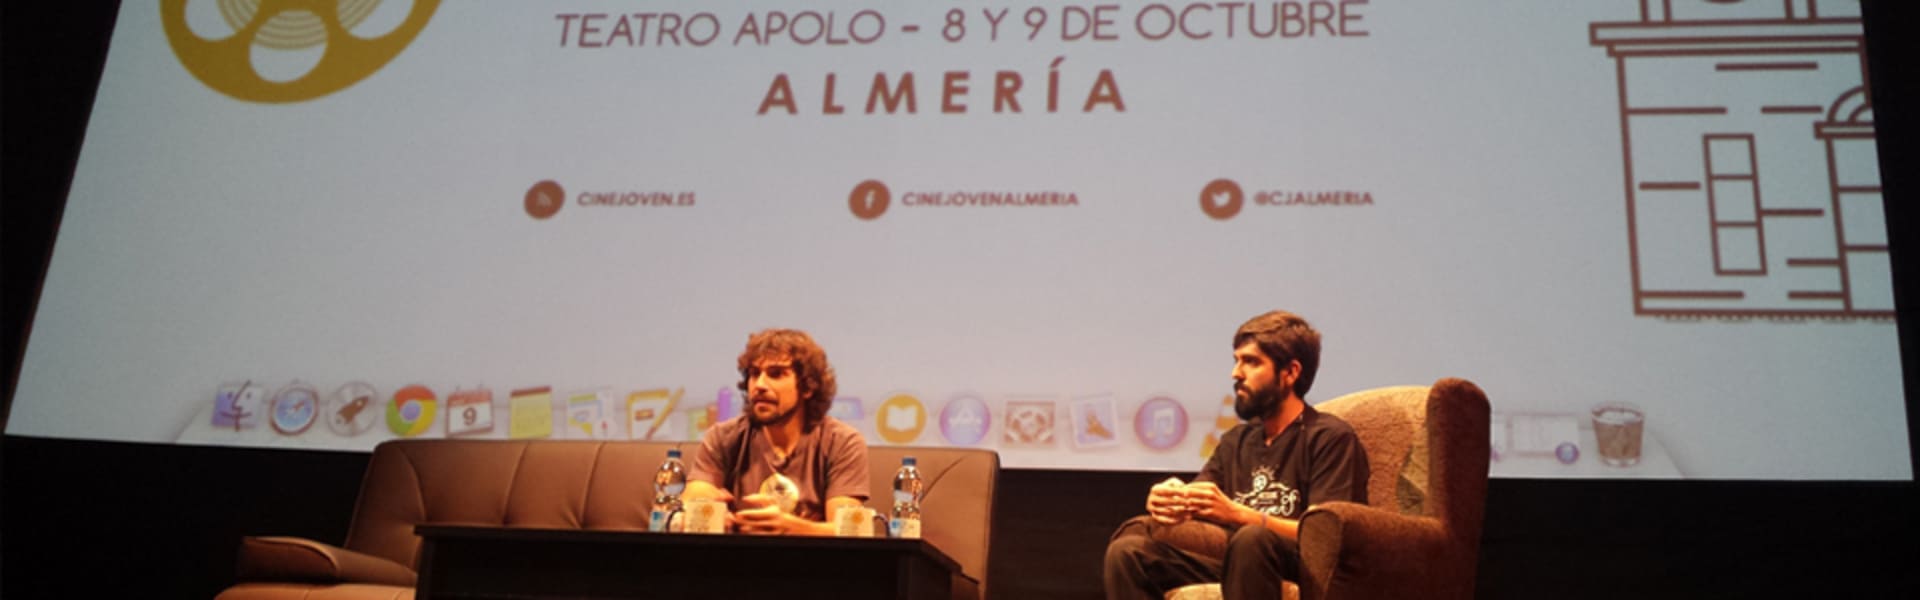 Ponencia en el Festival Cine Joven de Almería. Octubre 2014